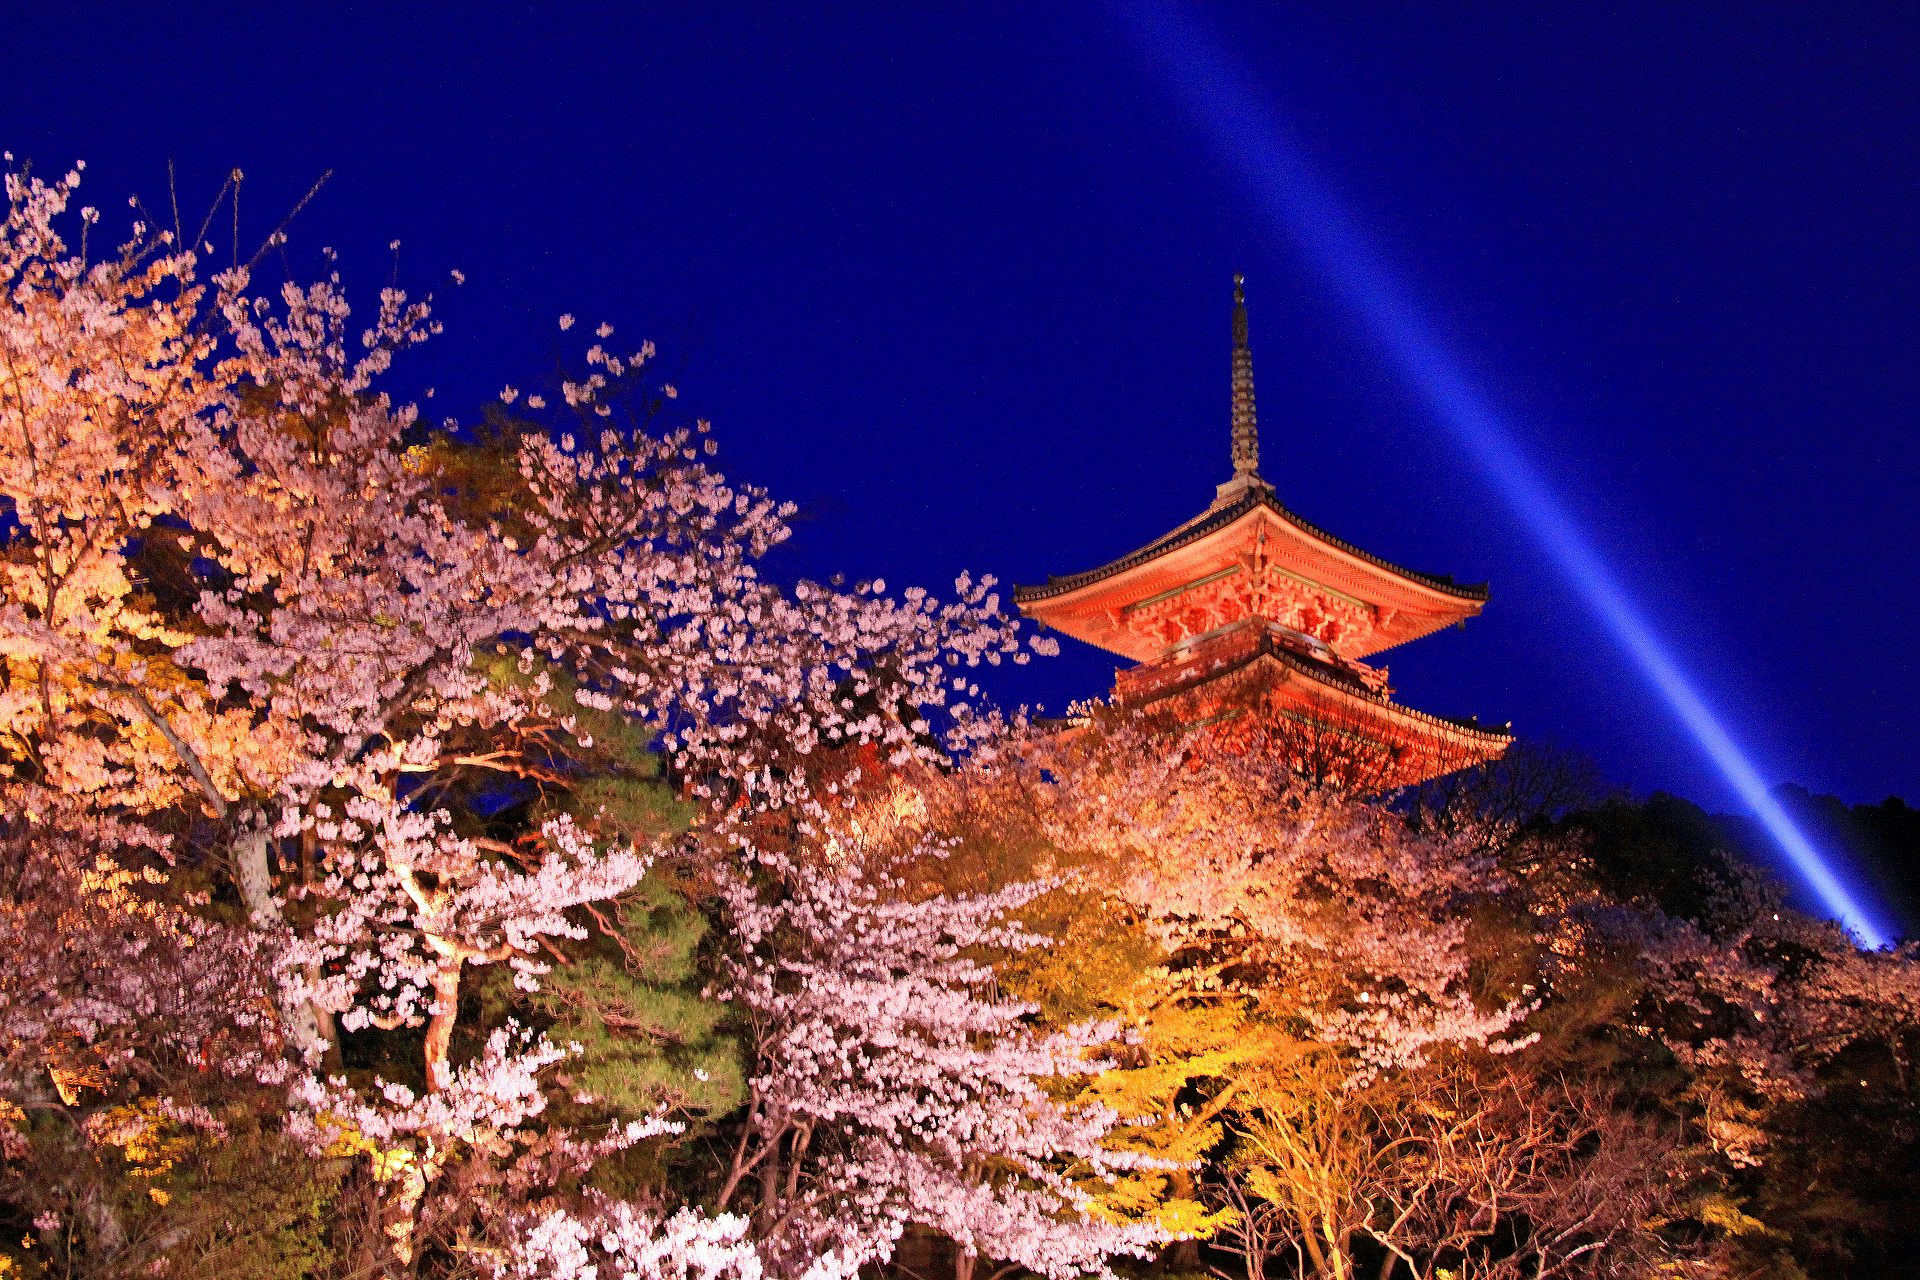 夜景 花火 イルミ 清水寺の夜桜 壁紙19x1280 壁紙館